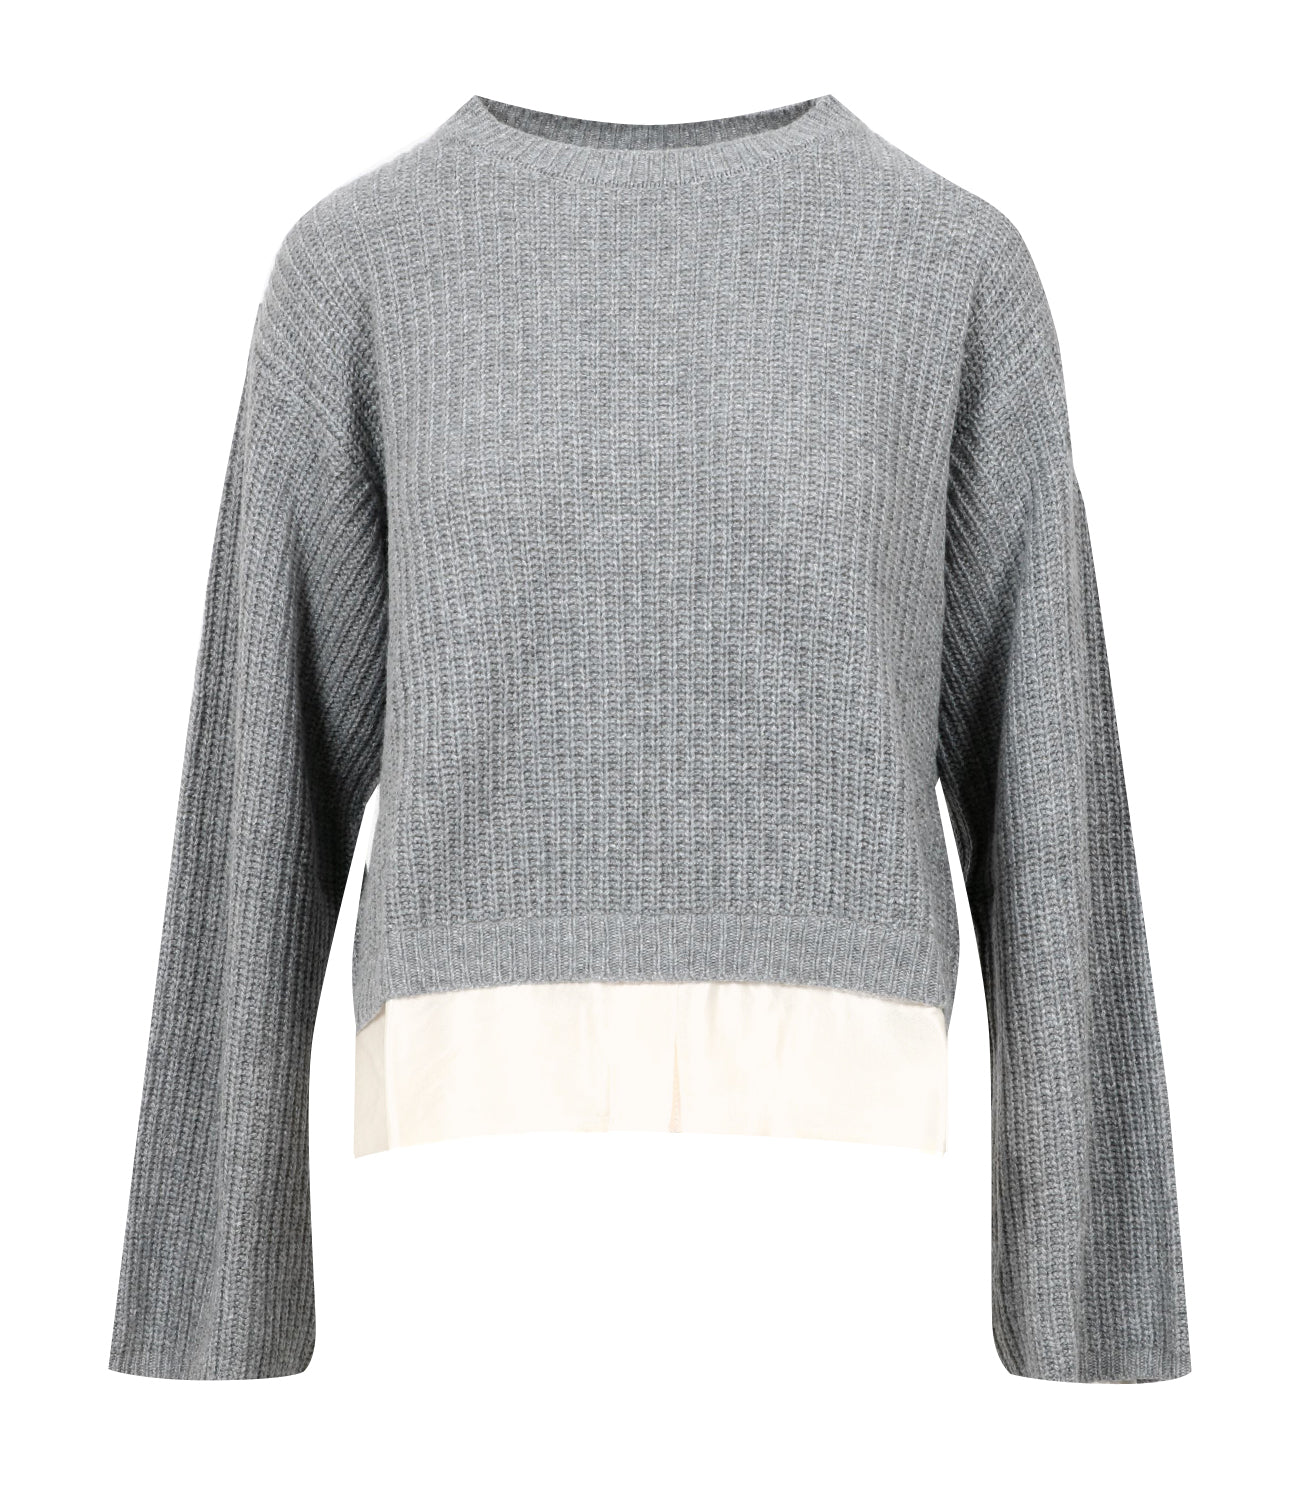 Kaos | Medium Grey Sweater